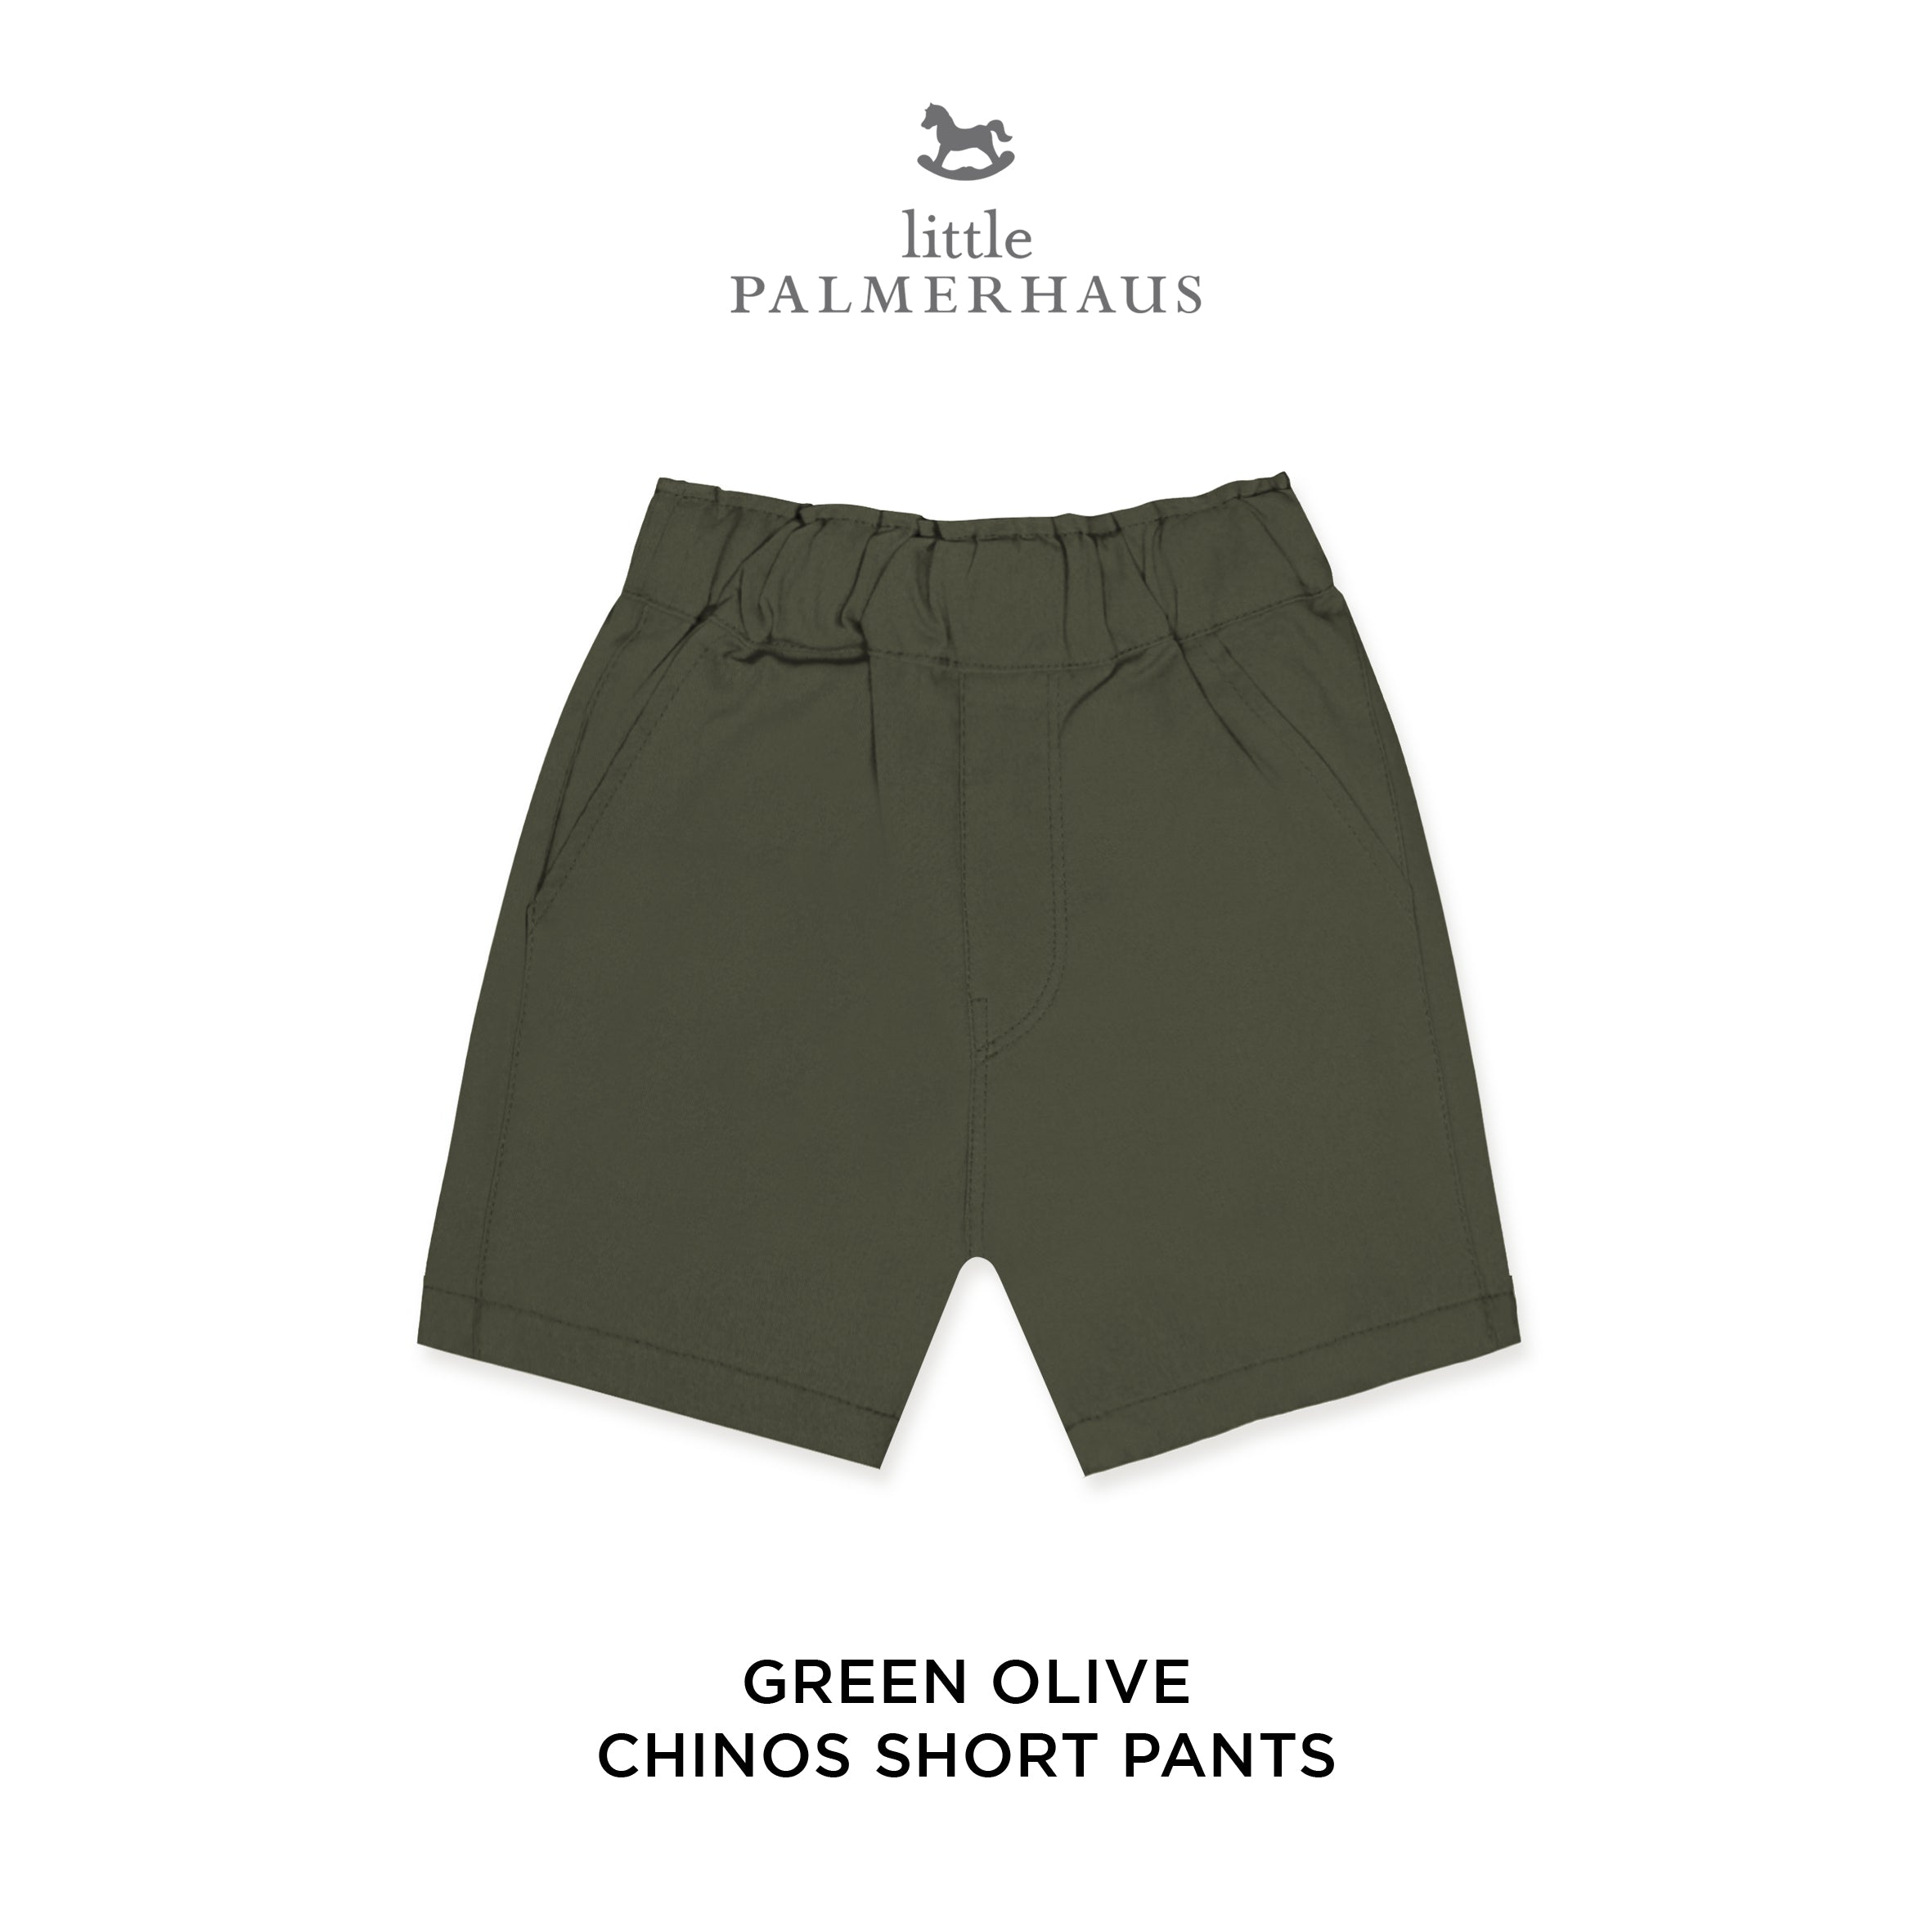 Chinos Short Pants 7.0